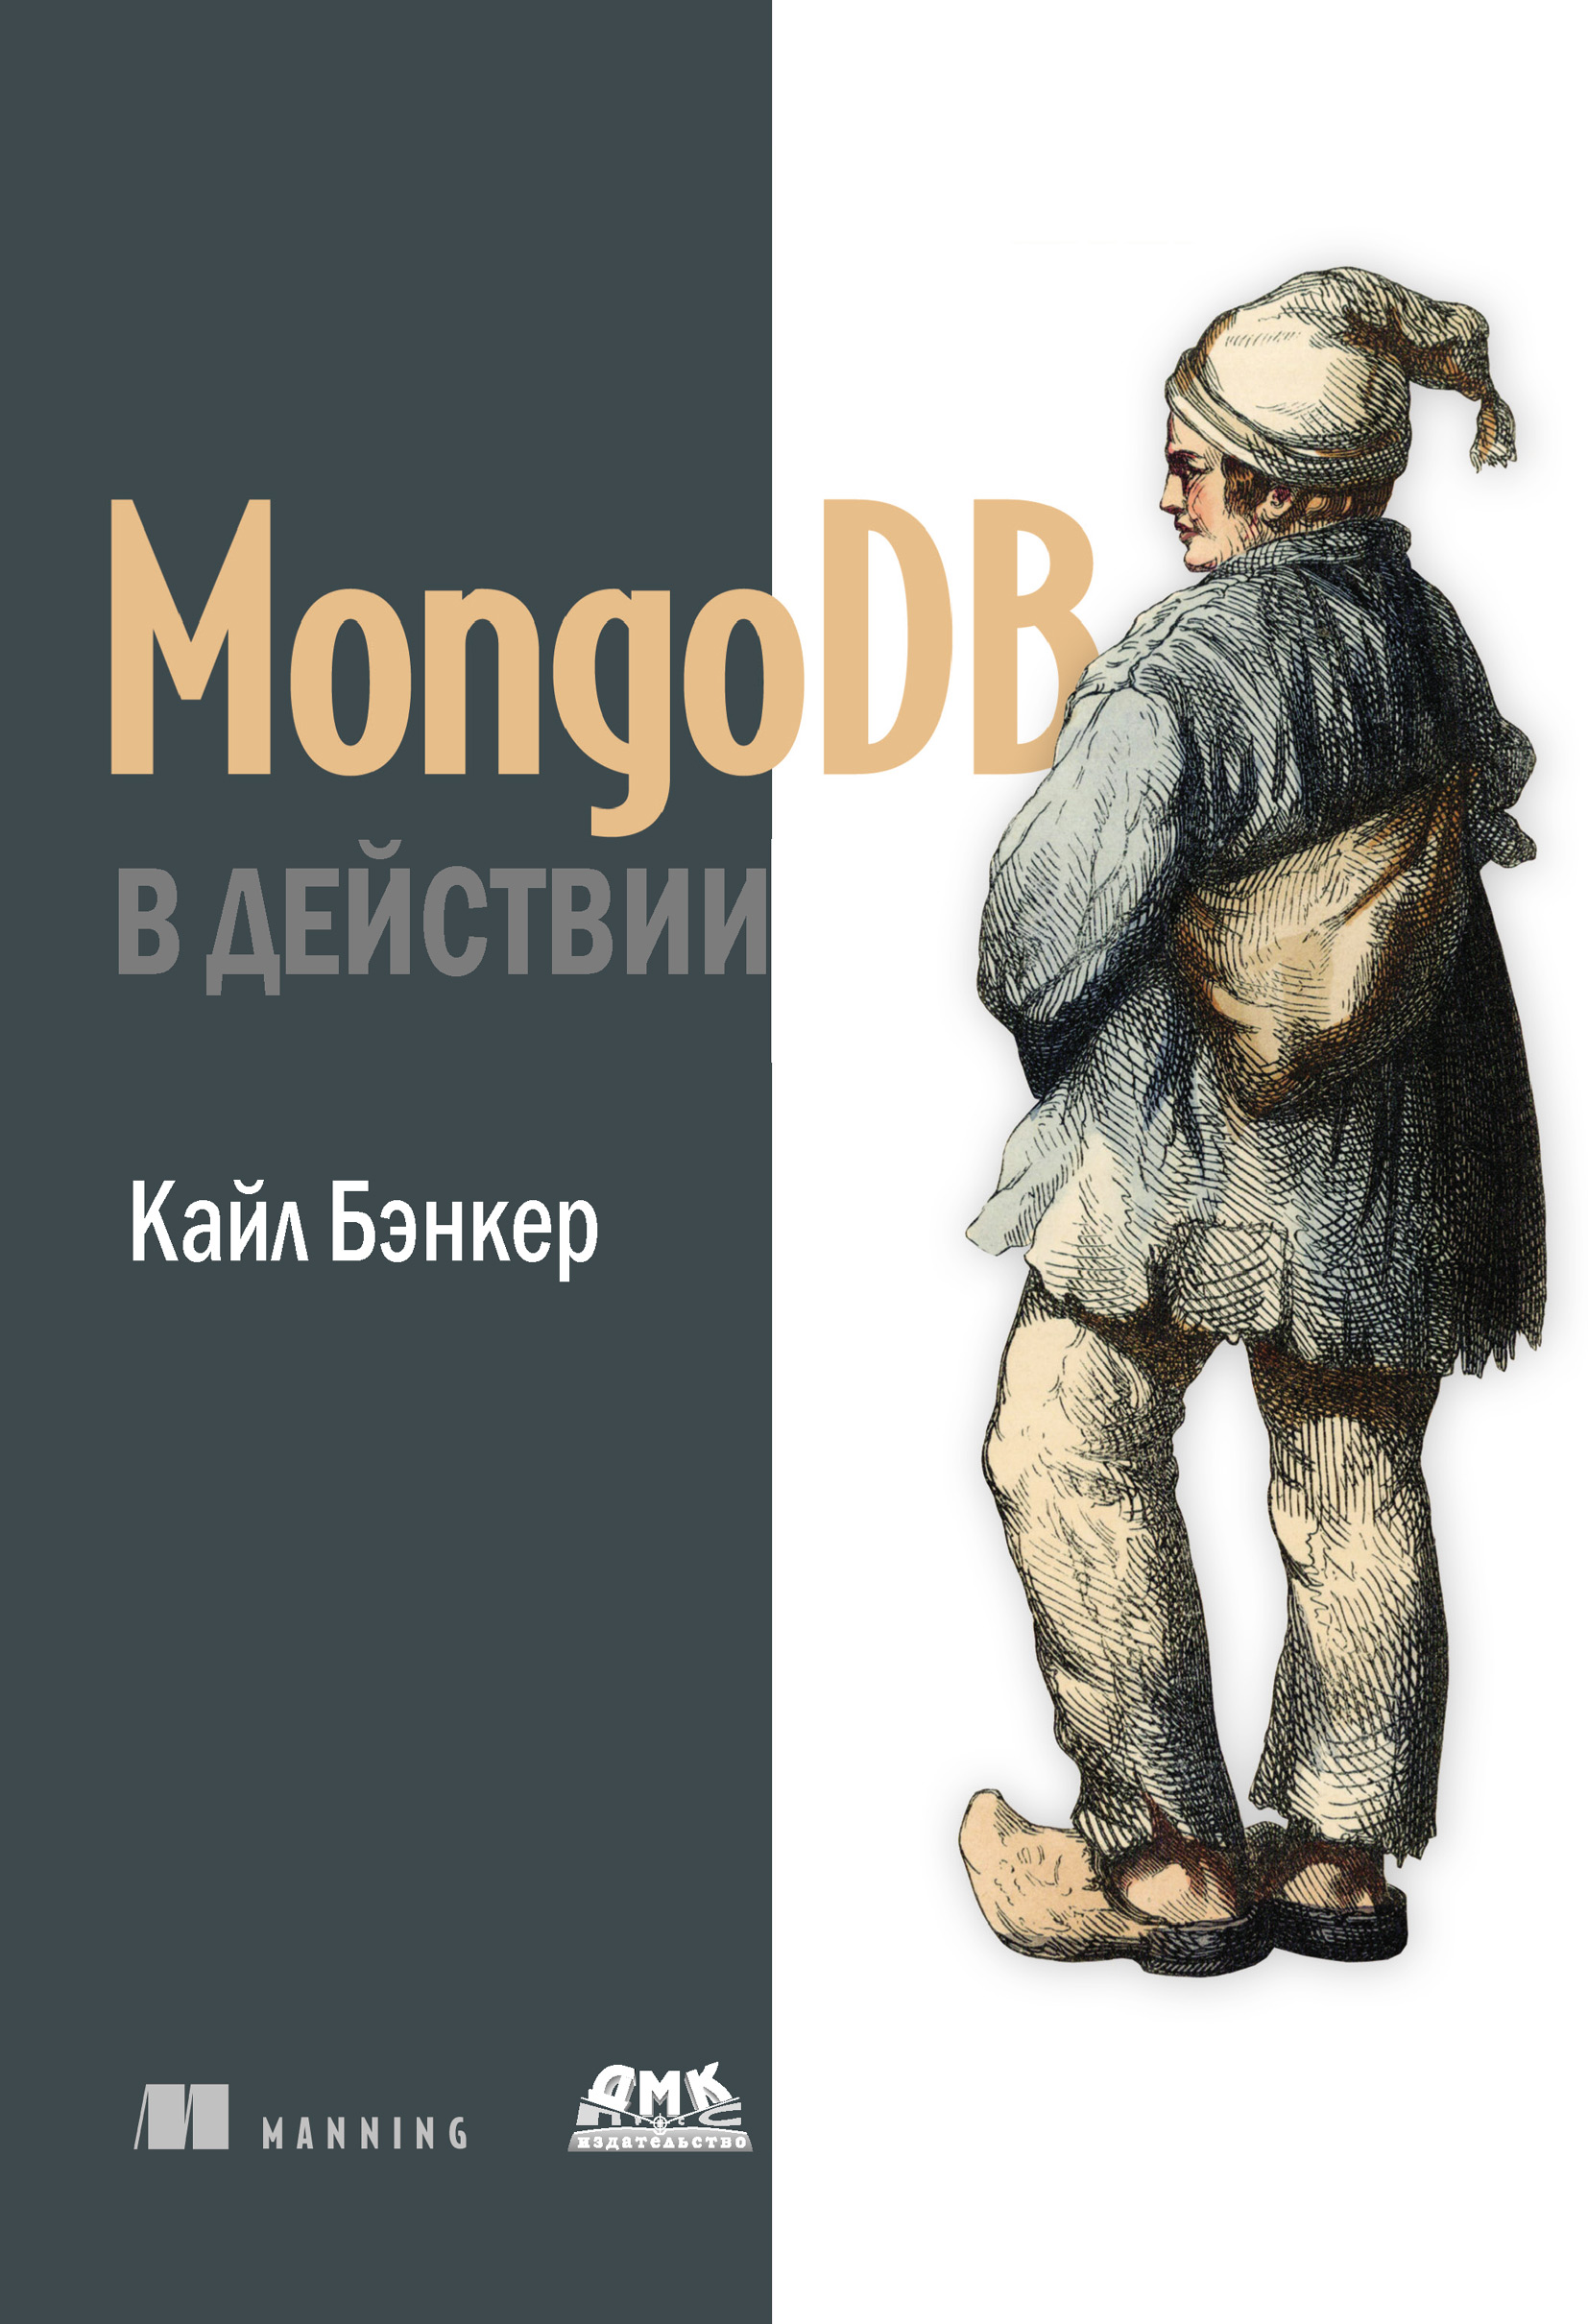 Книга  MongoDB в действии созданная Кайл Бэнкер, А. А. Слинкин может относится к жанру базы данных, зарубежная компьютерная литература, программы. Стоимость электронной книги MongoDB в действии с идентификатором 6654950 составляет 399.00 руб.